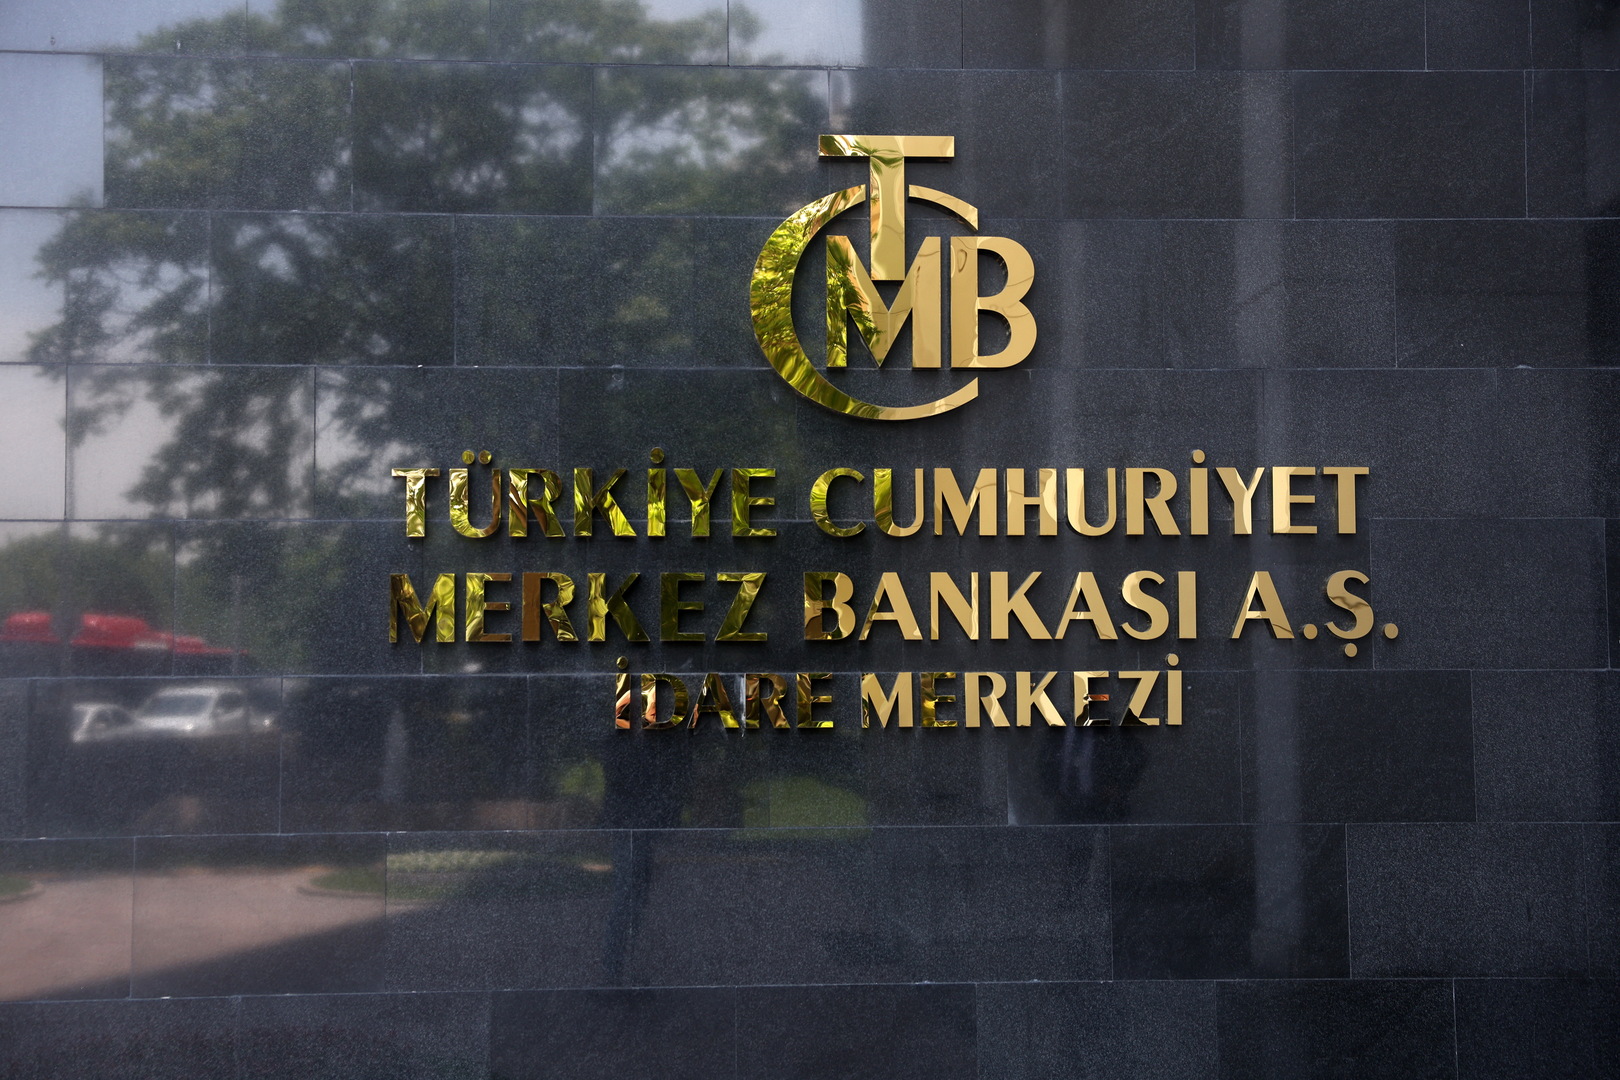 البنك المركزي التركي يقر زيادة كبيرة في سعر الفائدة دعما لليرة